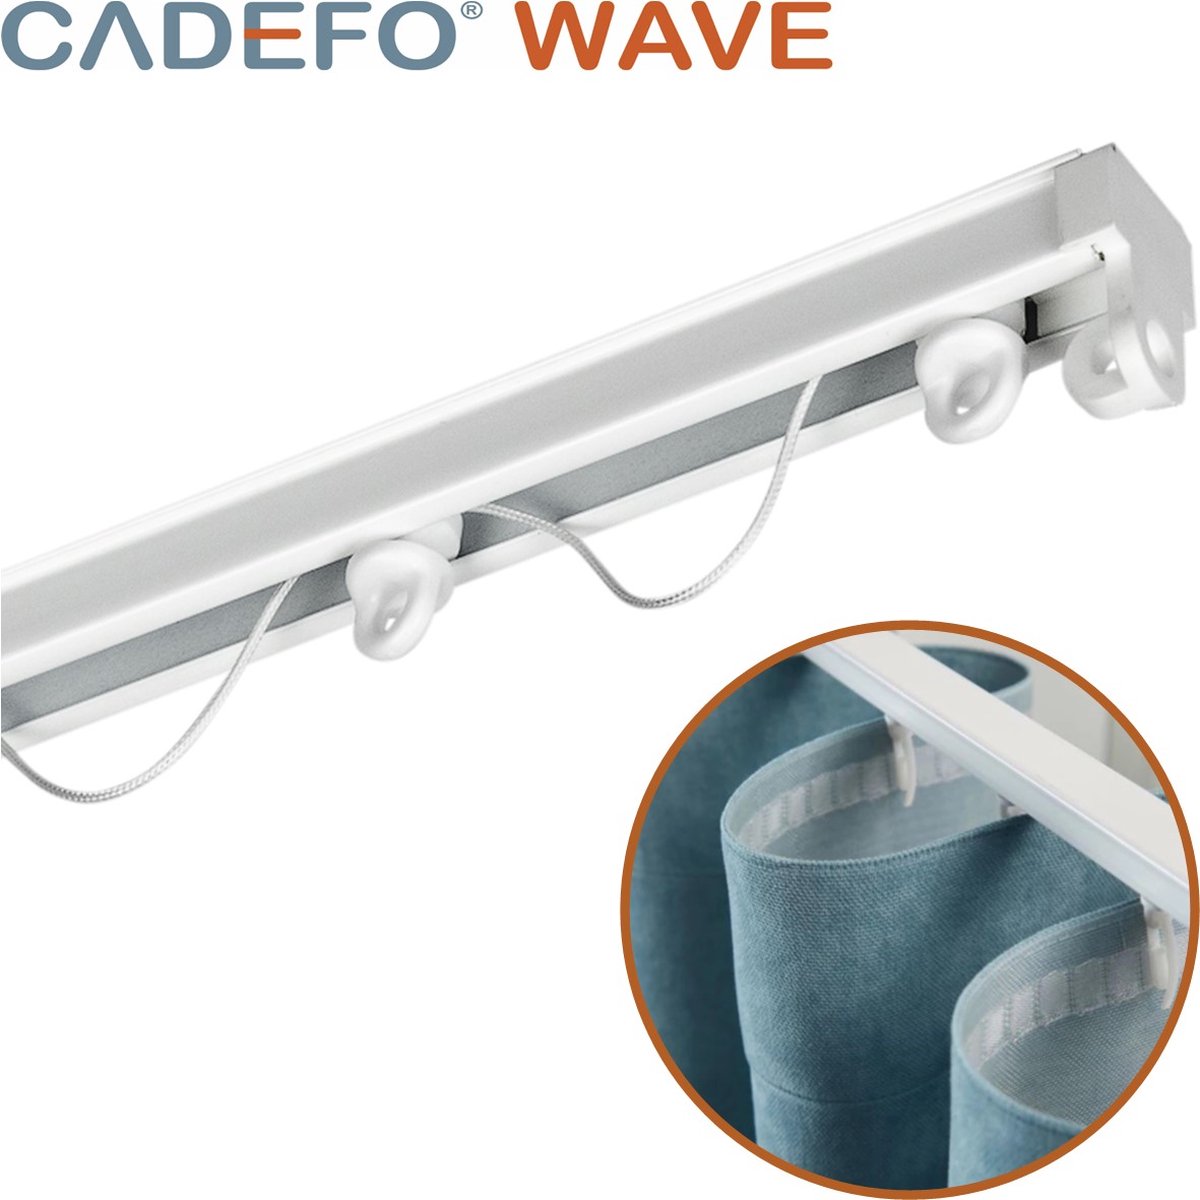 CADEFO WAVE (401 - 450 cm) Gordijnrails - Compleet op maat! - UIT 1 STUK - Leverbaar tot 6 meter - Plafondbevestiging - Lengte 412 cm